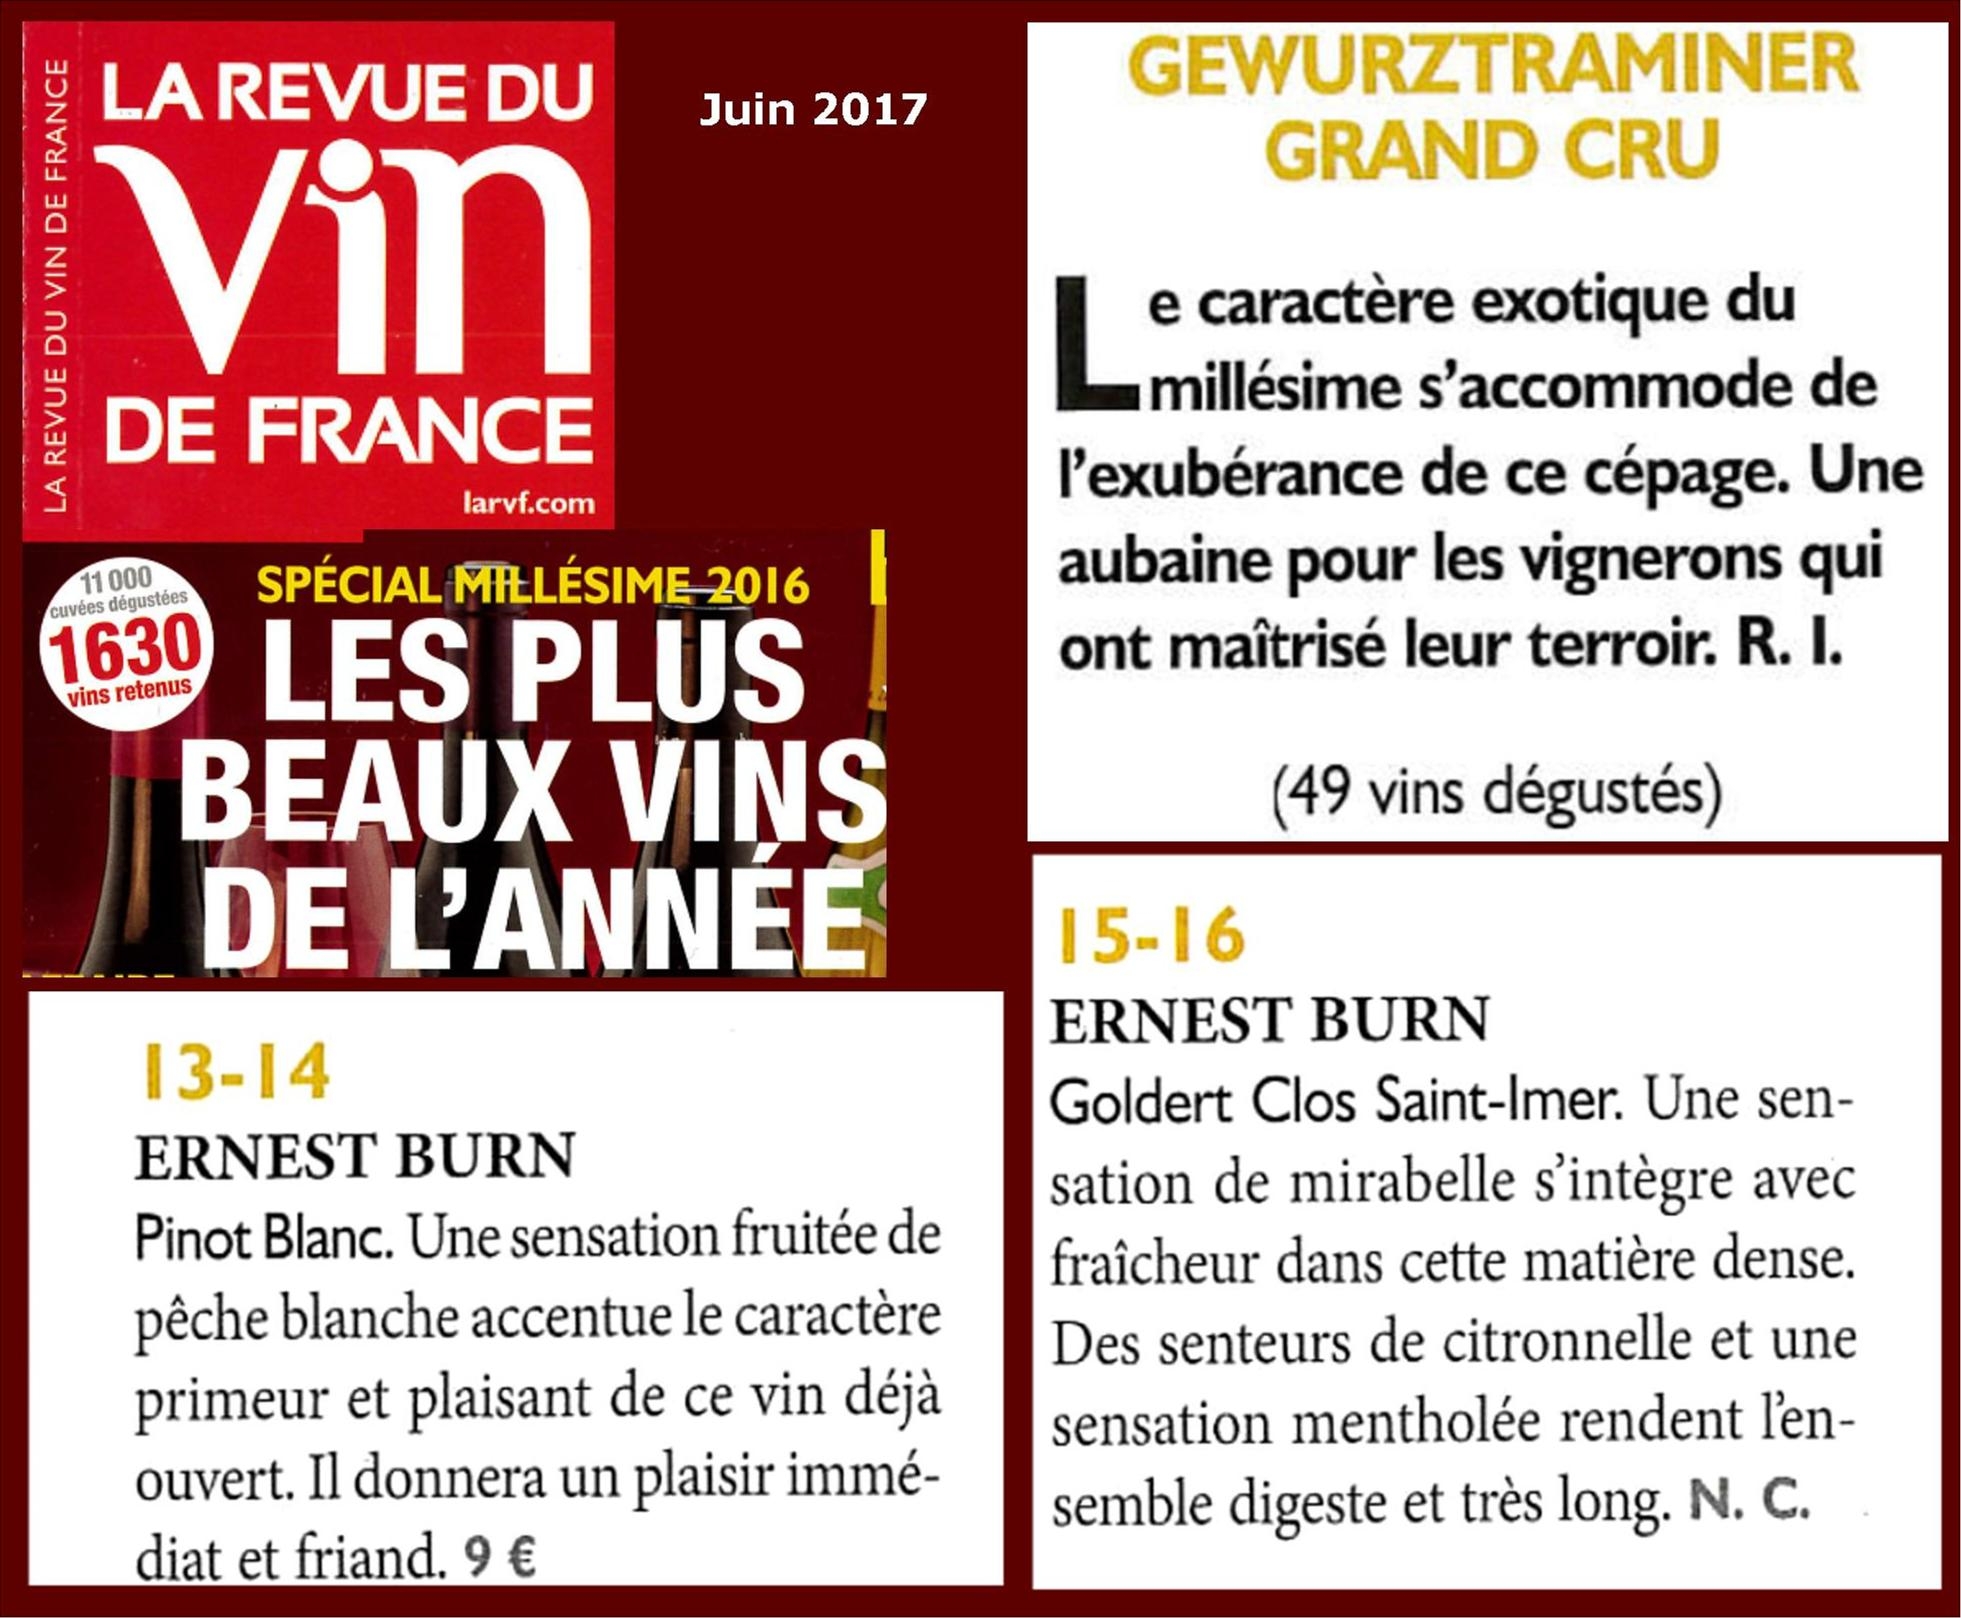 Pinot Blanc et Gewurztraminer Clos Saint-Imer Grand cru Goldert 2016